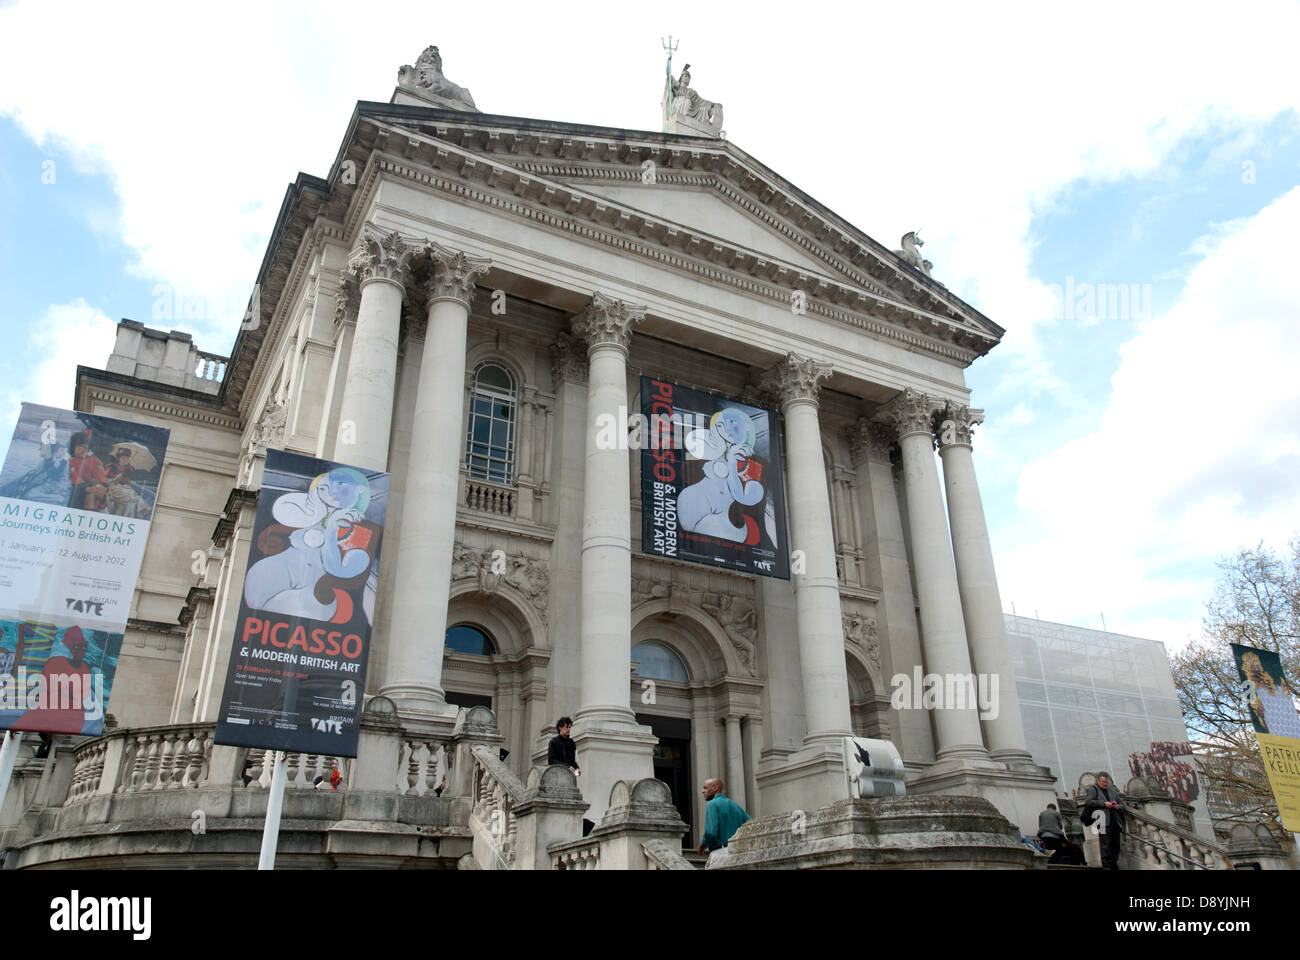 La facciata della Tate Britain, Londra. I banner sono pubblicità la mostra "Picasso & moderna arte britannico'. Foto Stock